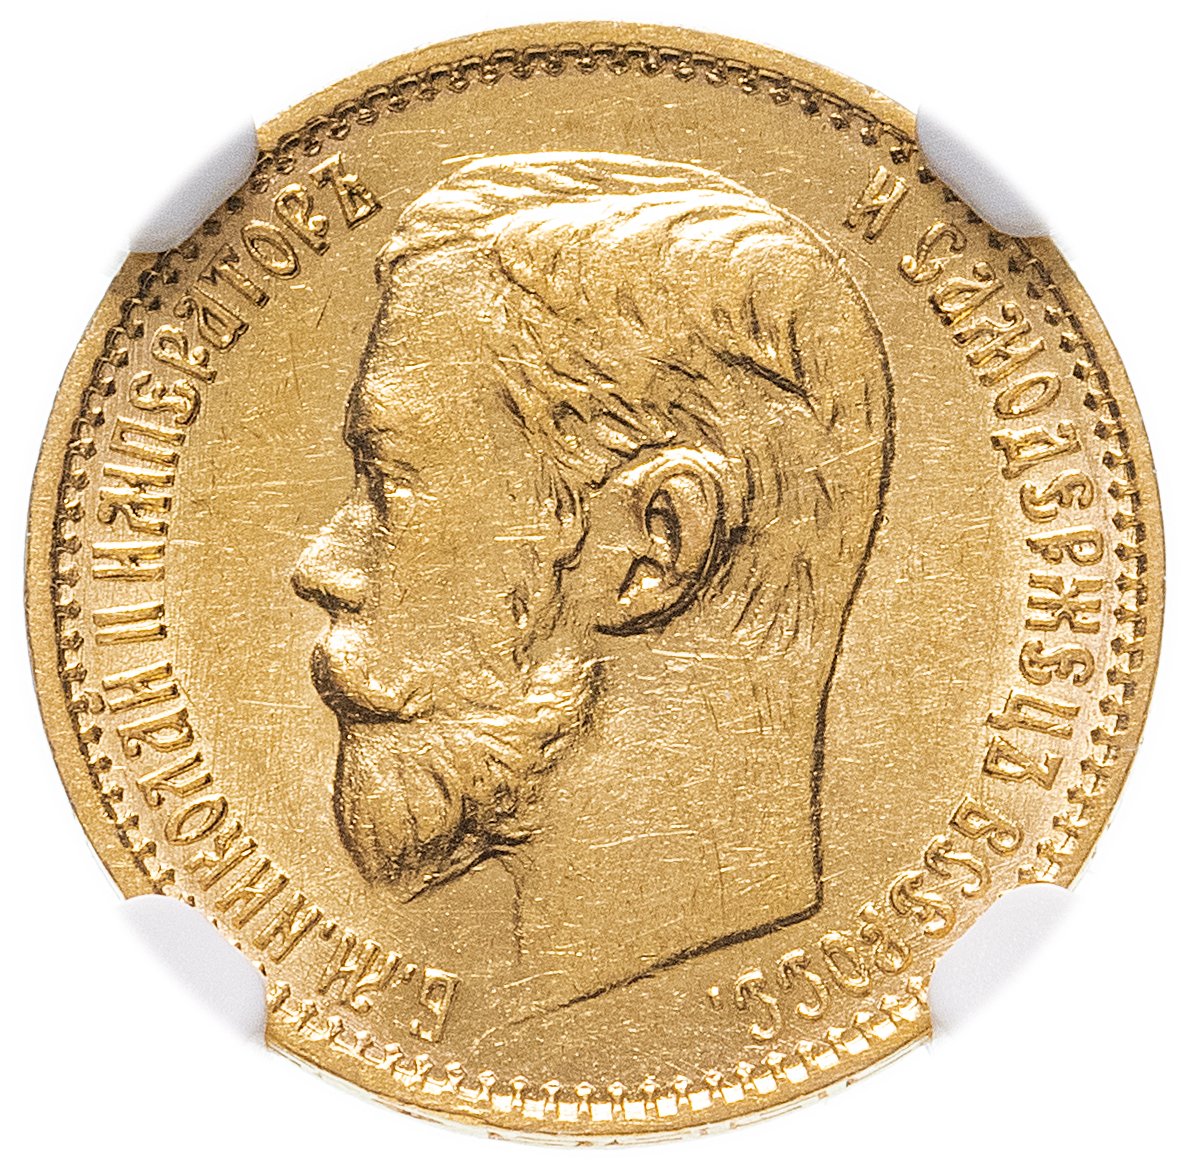 5 рублей золотых николая 2